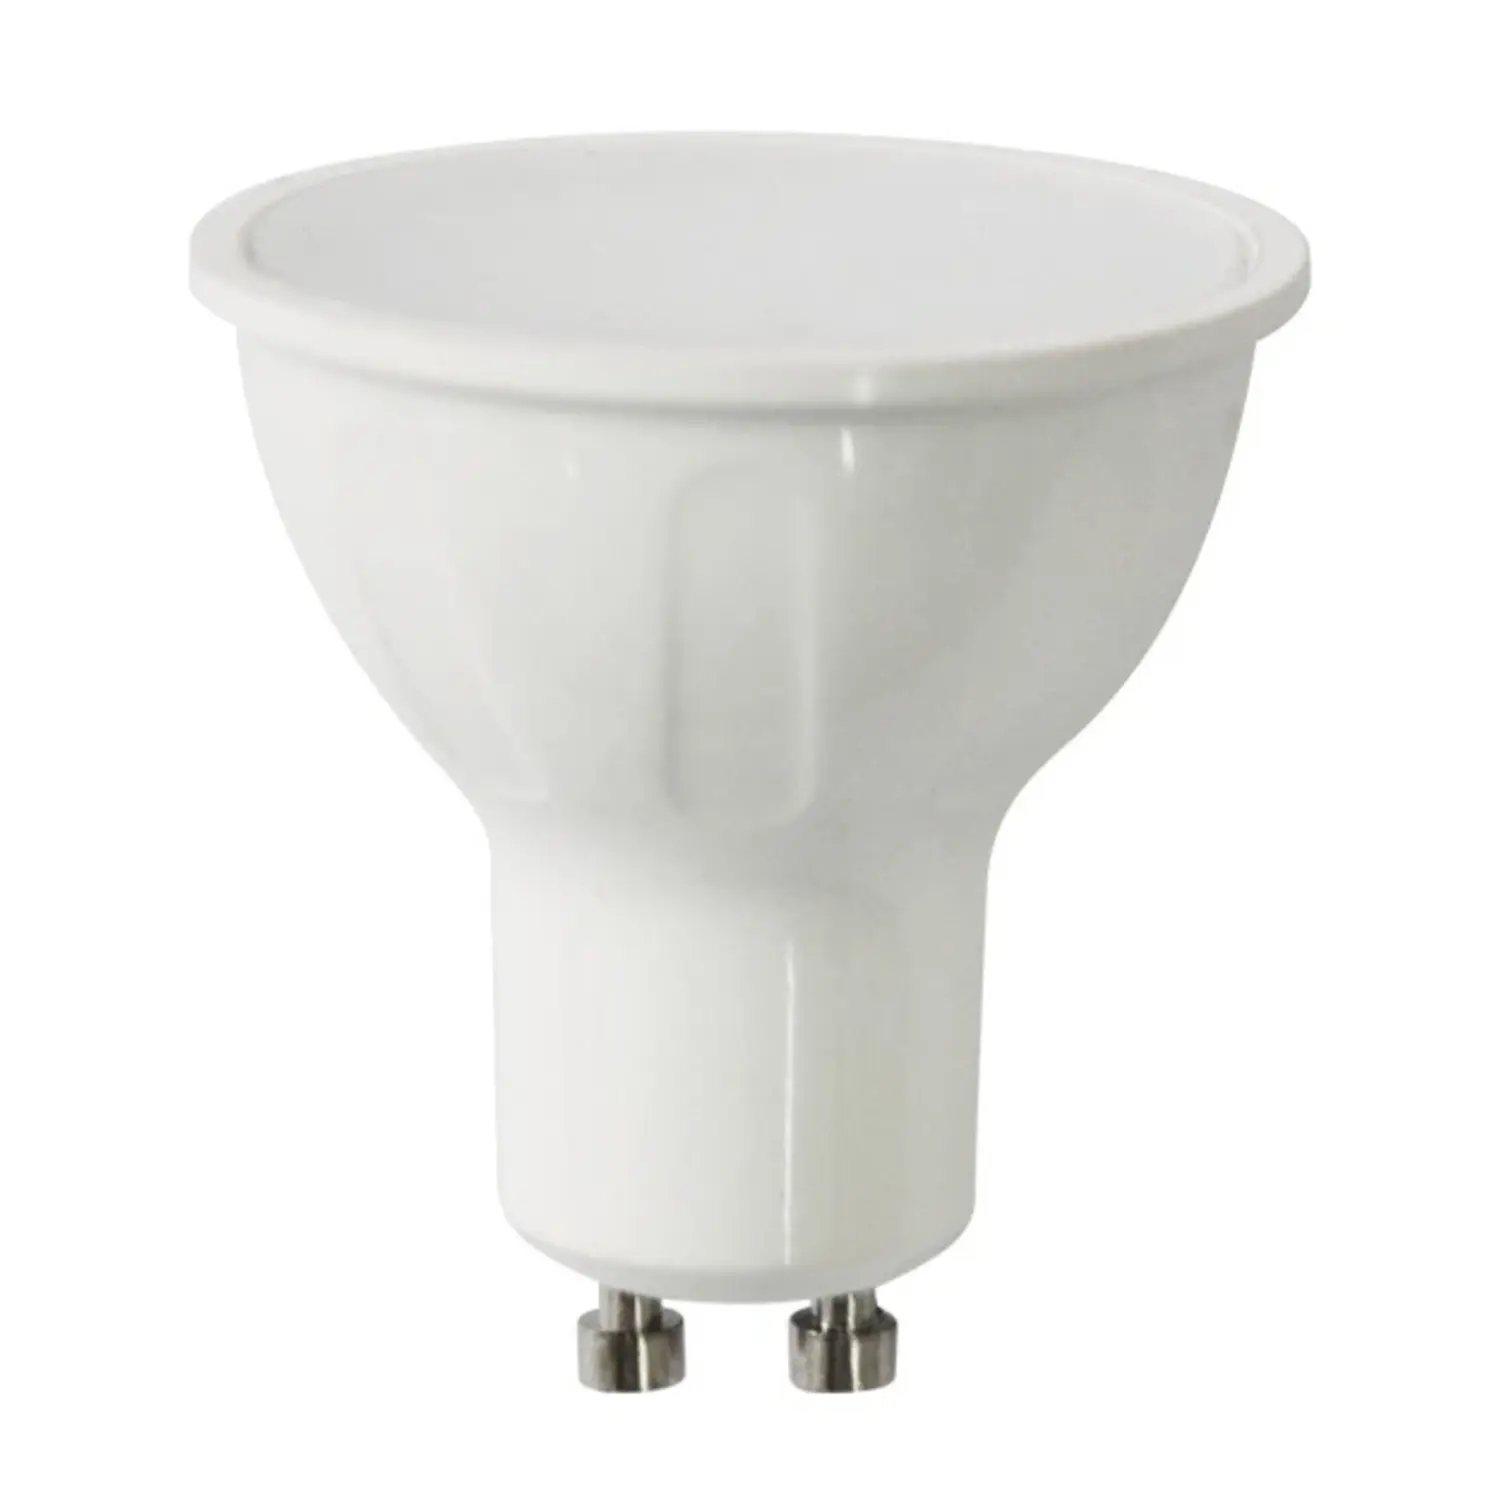 immagine del prodotto lampadina led spot porta faretto 120° gu10 6 watt bianco freddo